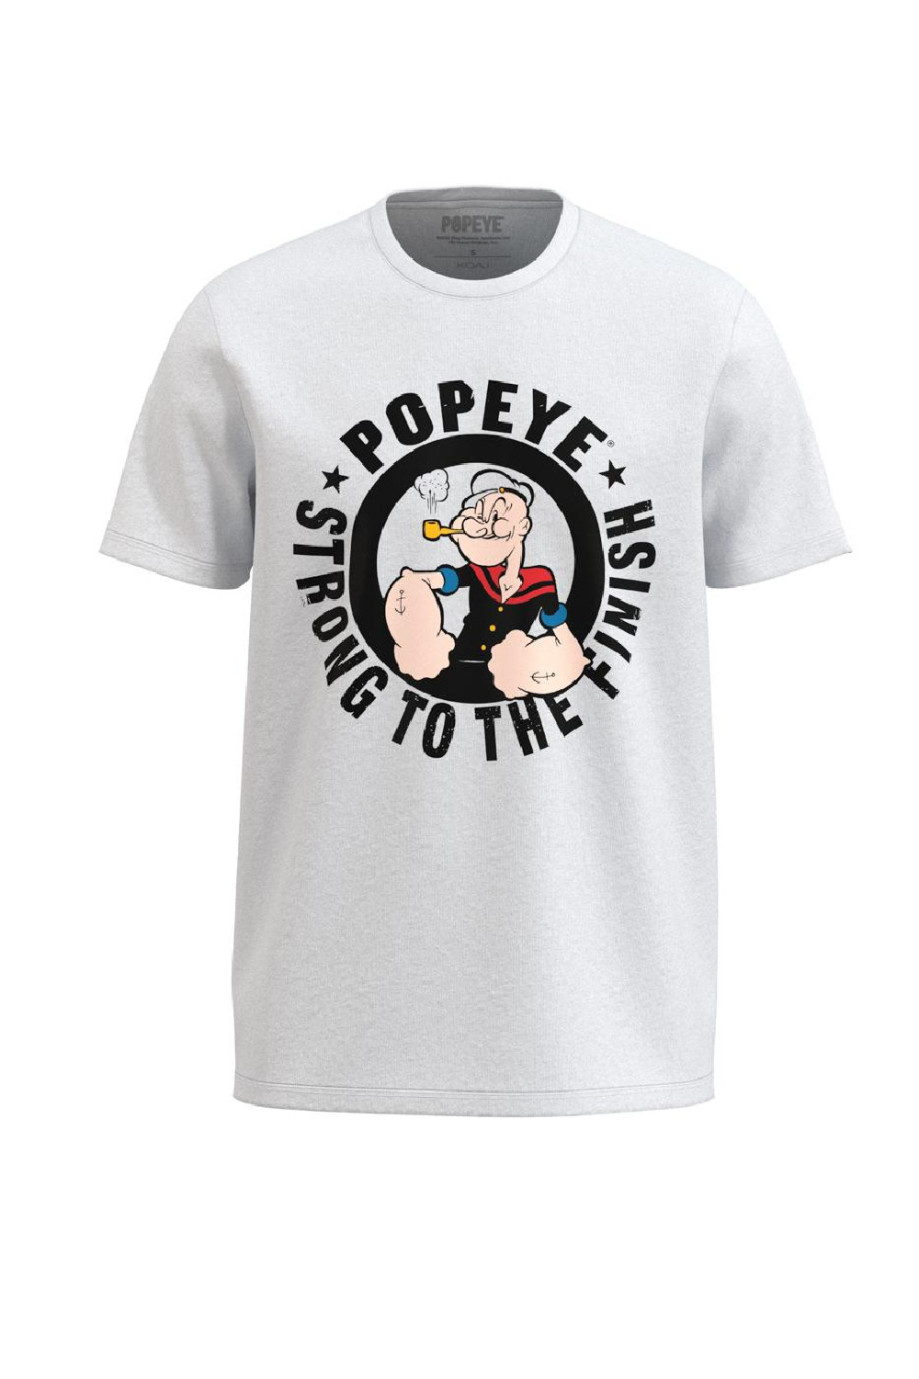 Camiseta unicolor con manga corta y diseño en frente de Popeye